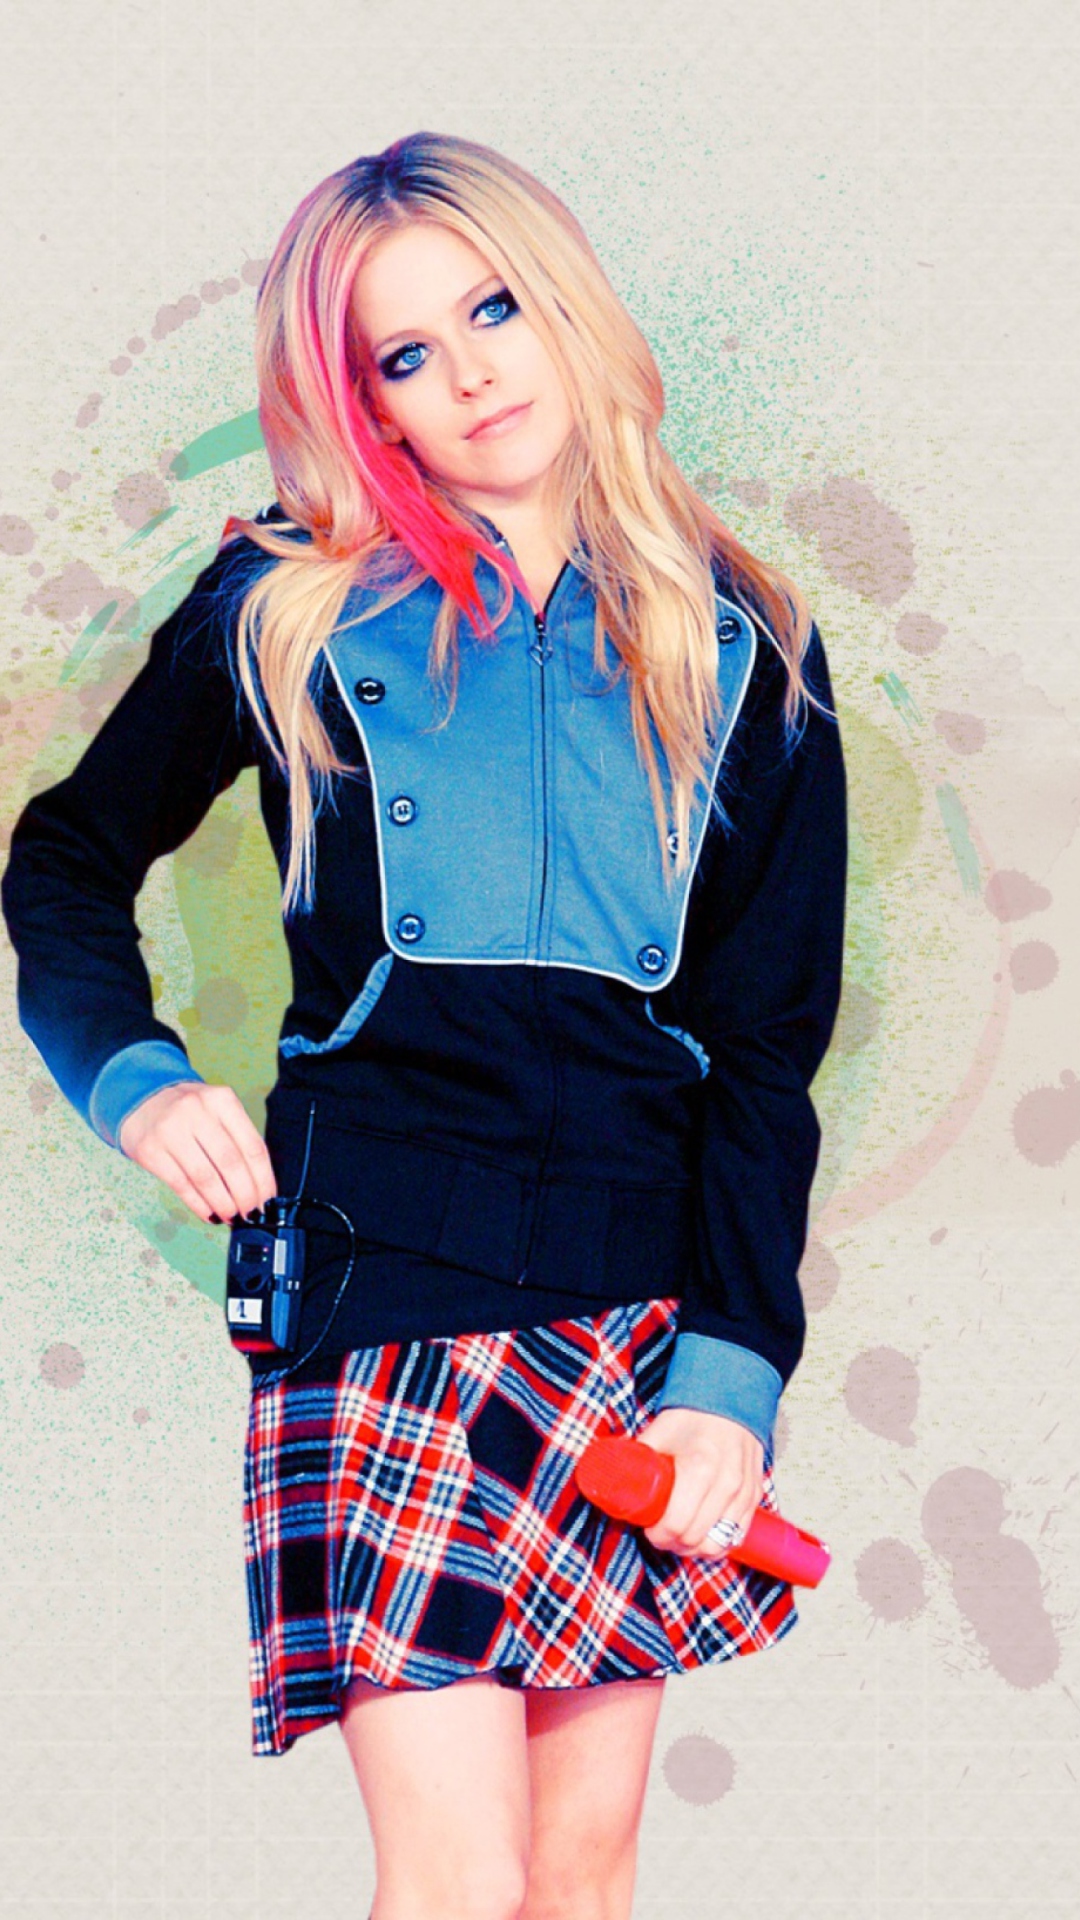 Das Avril Lavigne Wallpaper 1080x1920